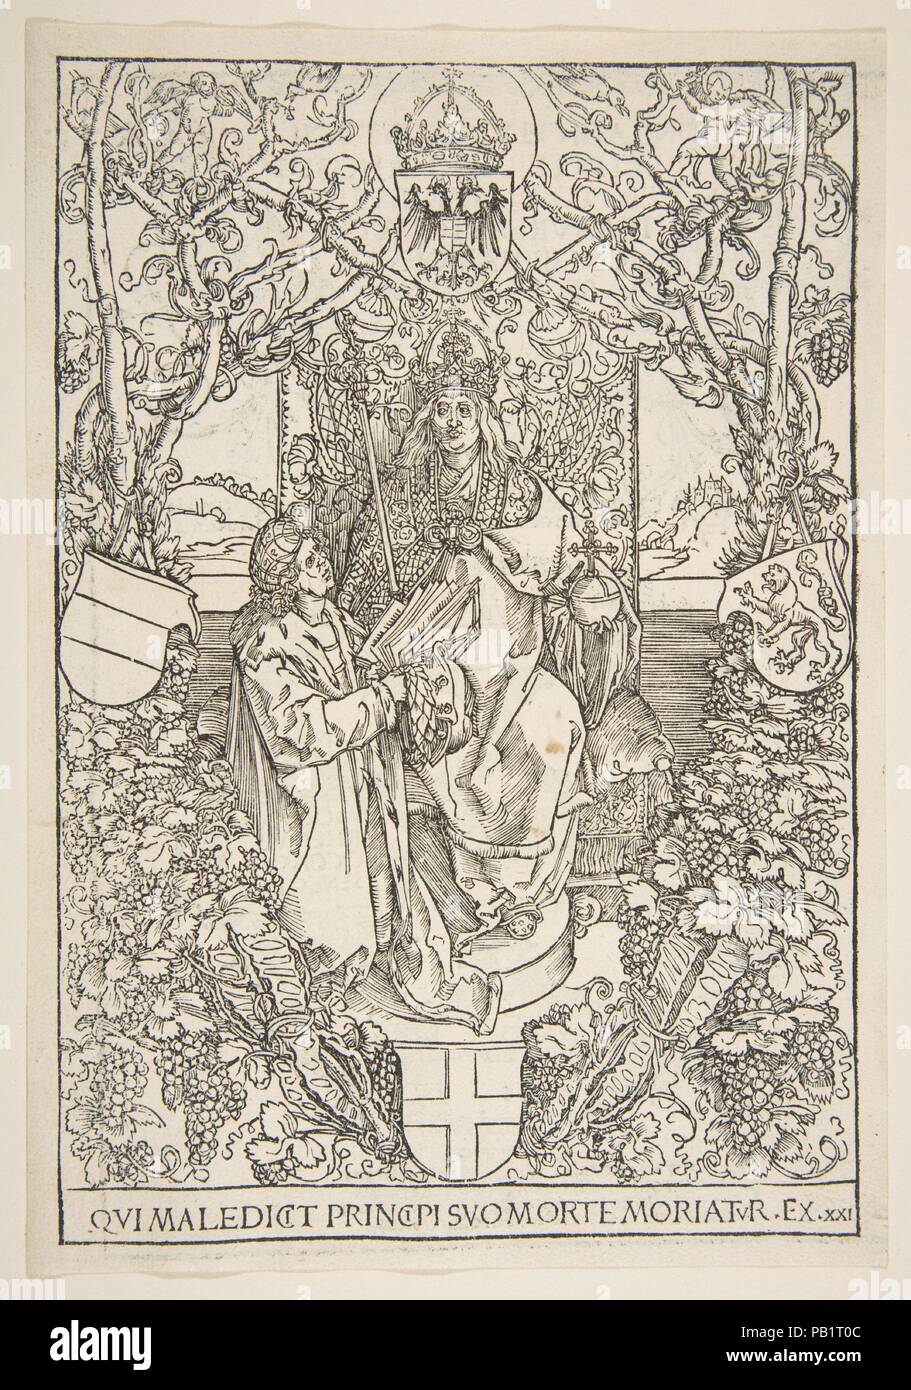 Conrad Celtis présente son livre 'Quatuor Libri Amorum' pour Maximilien I ( du livre). Artiste : Albrecht Dürer (Nuremberg, Allemagne Nuremberg 1471-1528). Fiche technique : Dimensions : 9 1/4 x 6 3/16 in. (23,3 x 15,9 cm) de droit : 8 3/4 x 5 7/16 in. (21,4 x 14,6 cm). Date : 1502. Cette gravure sur bois, l'illustration est sur le verso de la page de titre du livre de Conrad Celtis Celtis Conradi 'Protucii...quatuor libri amorum secundum quatuor latera Germanie", publié à Nuremberg, 5 avril 1502. Musée : Metropolitan Museum of Art, New York, USA. Banque D'Images